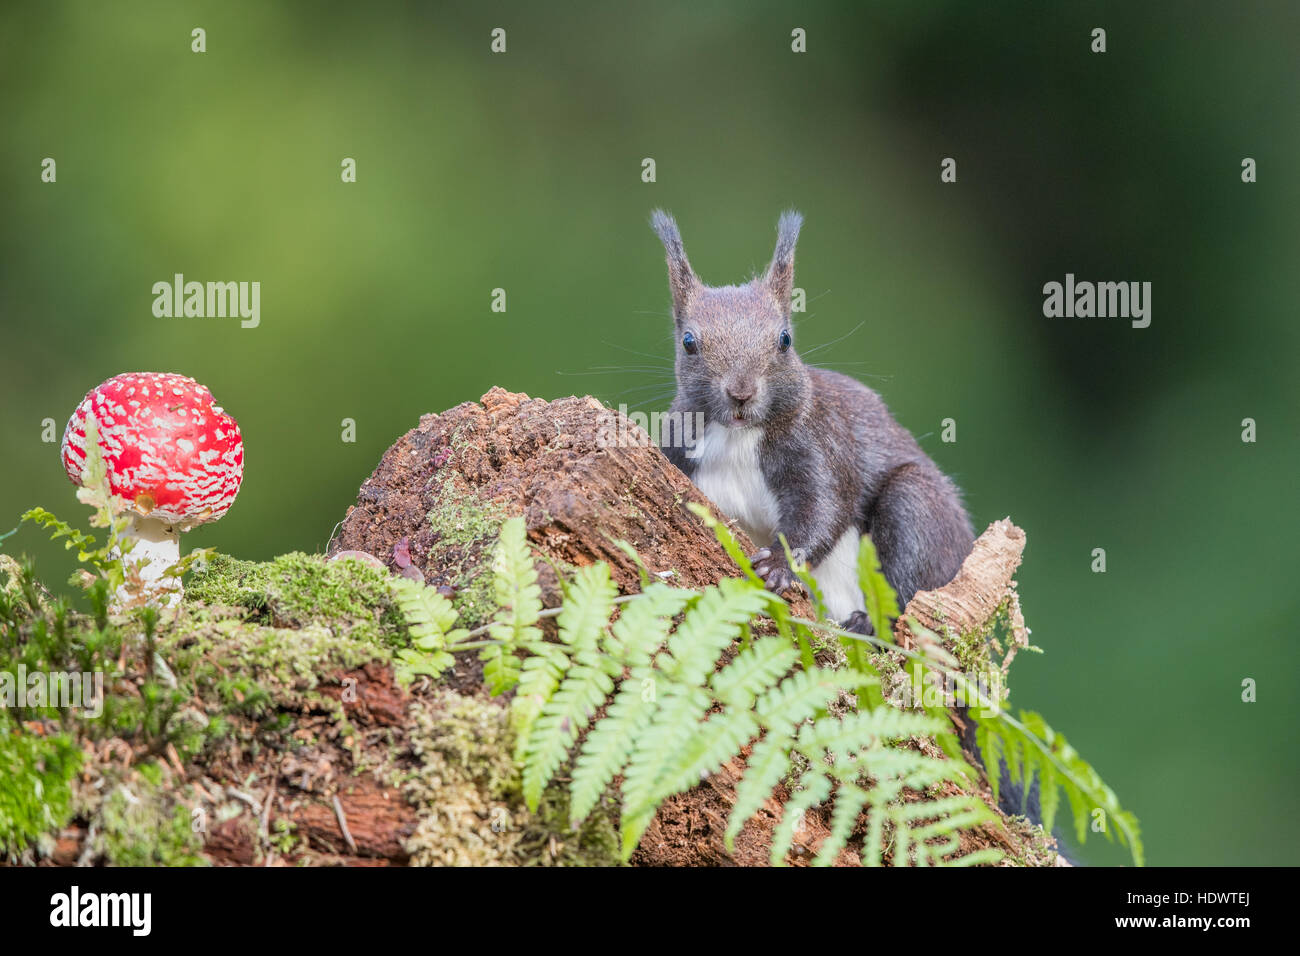 L'Écureuil roux (Sciurius vulgaris) (formulaire) à la recherche de nourriture sur un sol forestier. Champignon Agaric Fly en arrière-plan. Banque D'Images